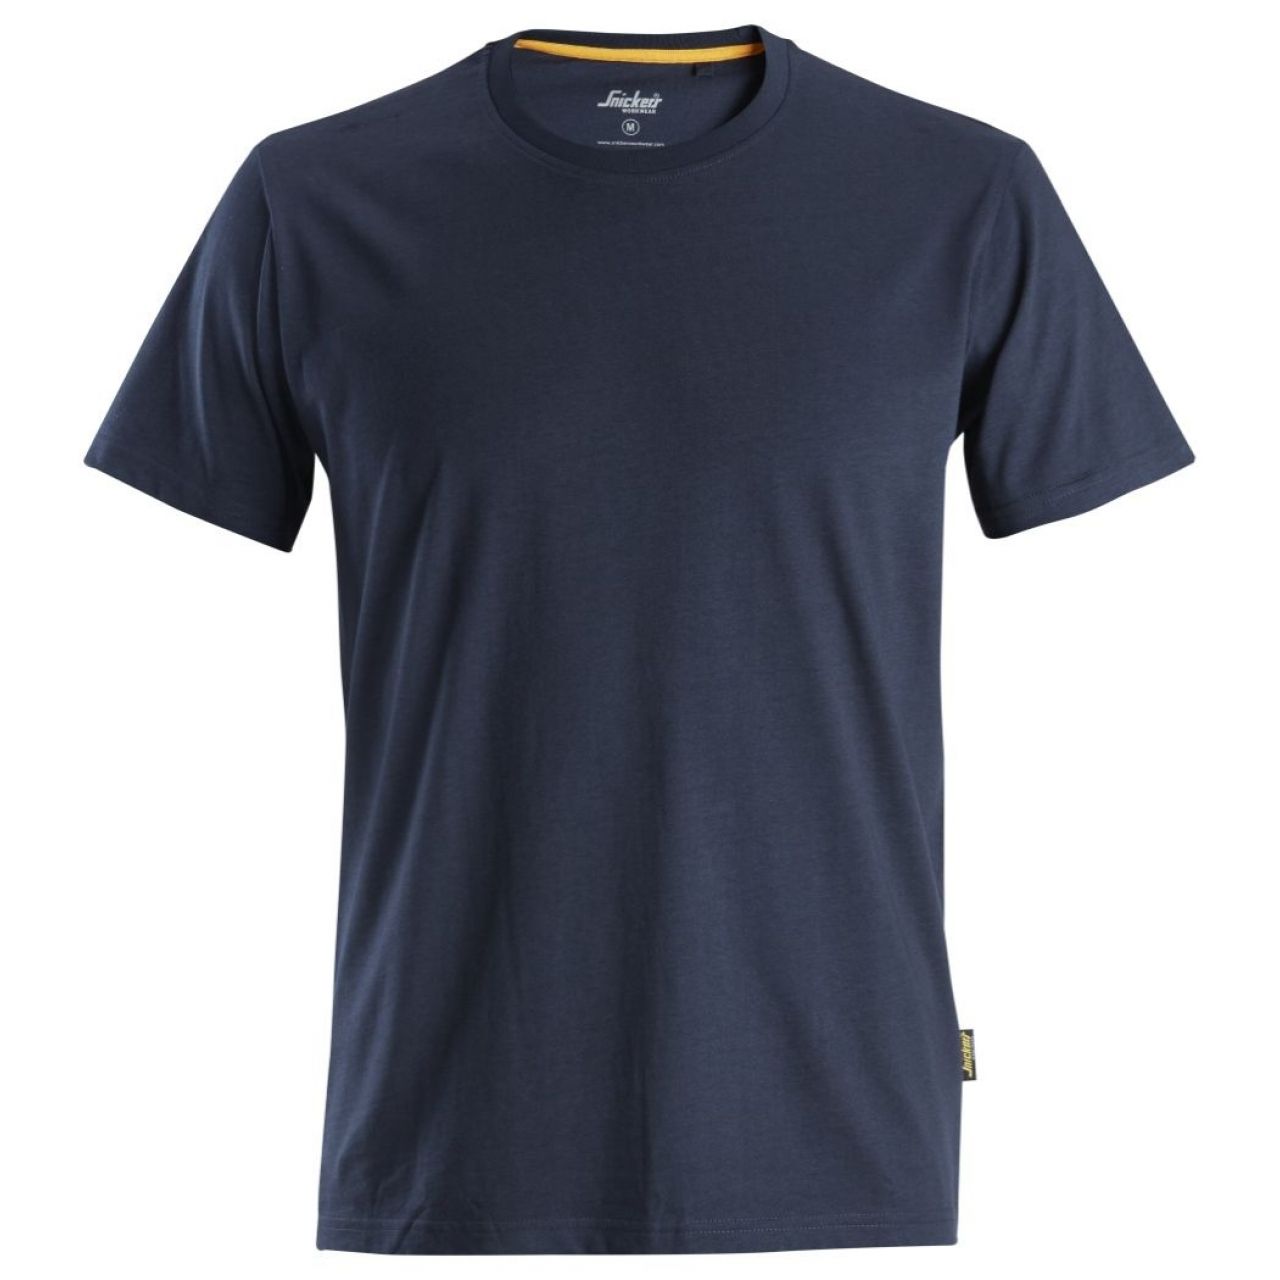 Camiseta de algodón orgánico AllroundWork Azul marino talla XS